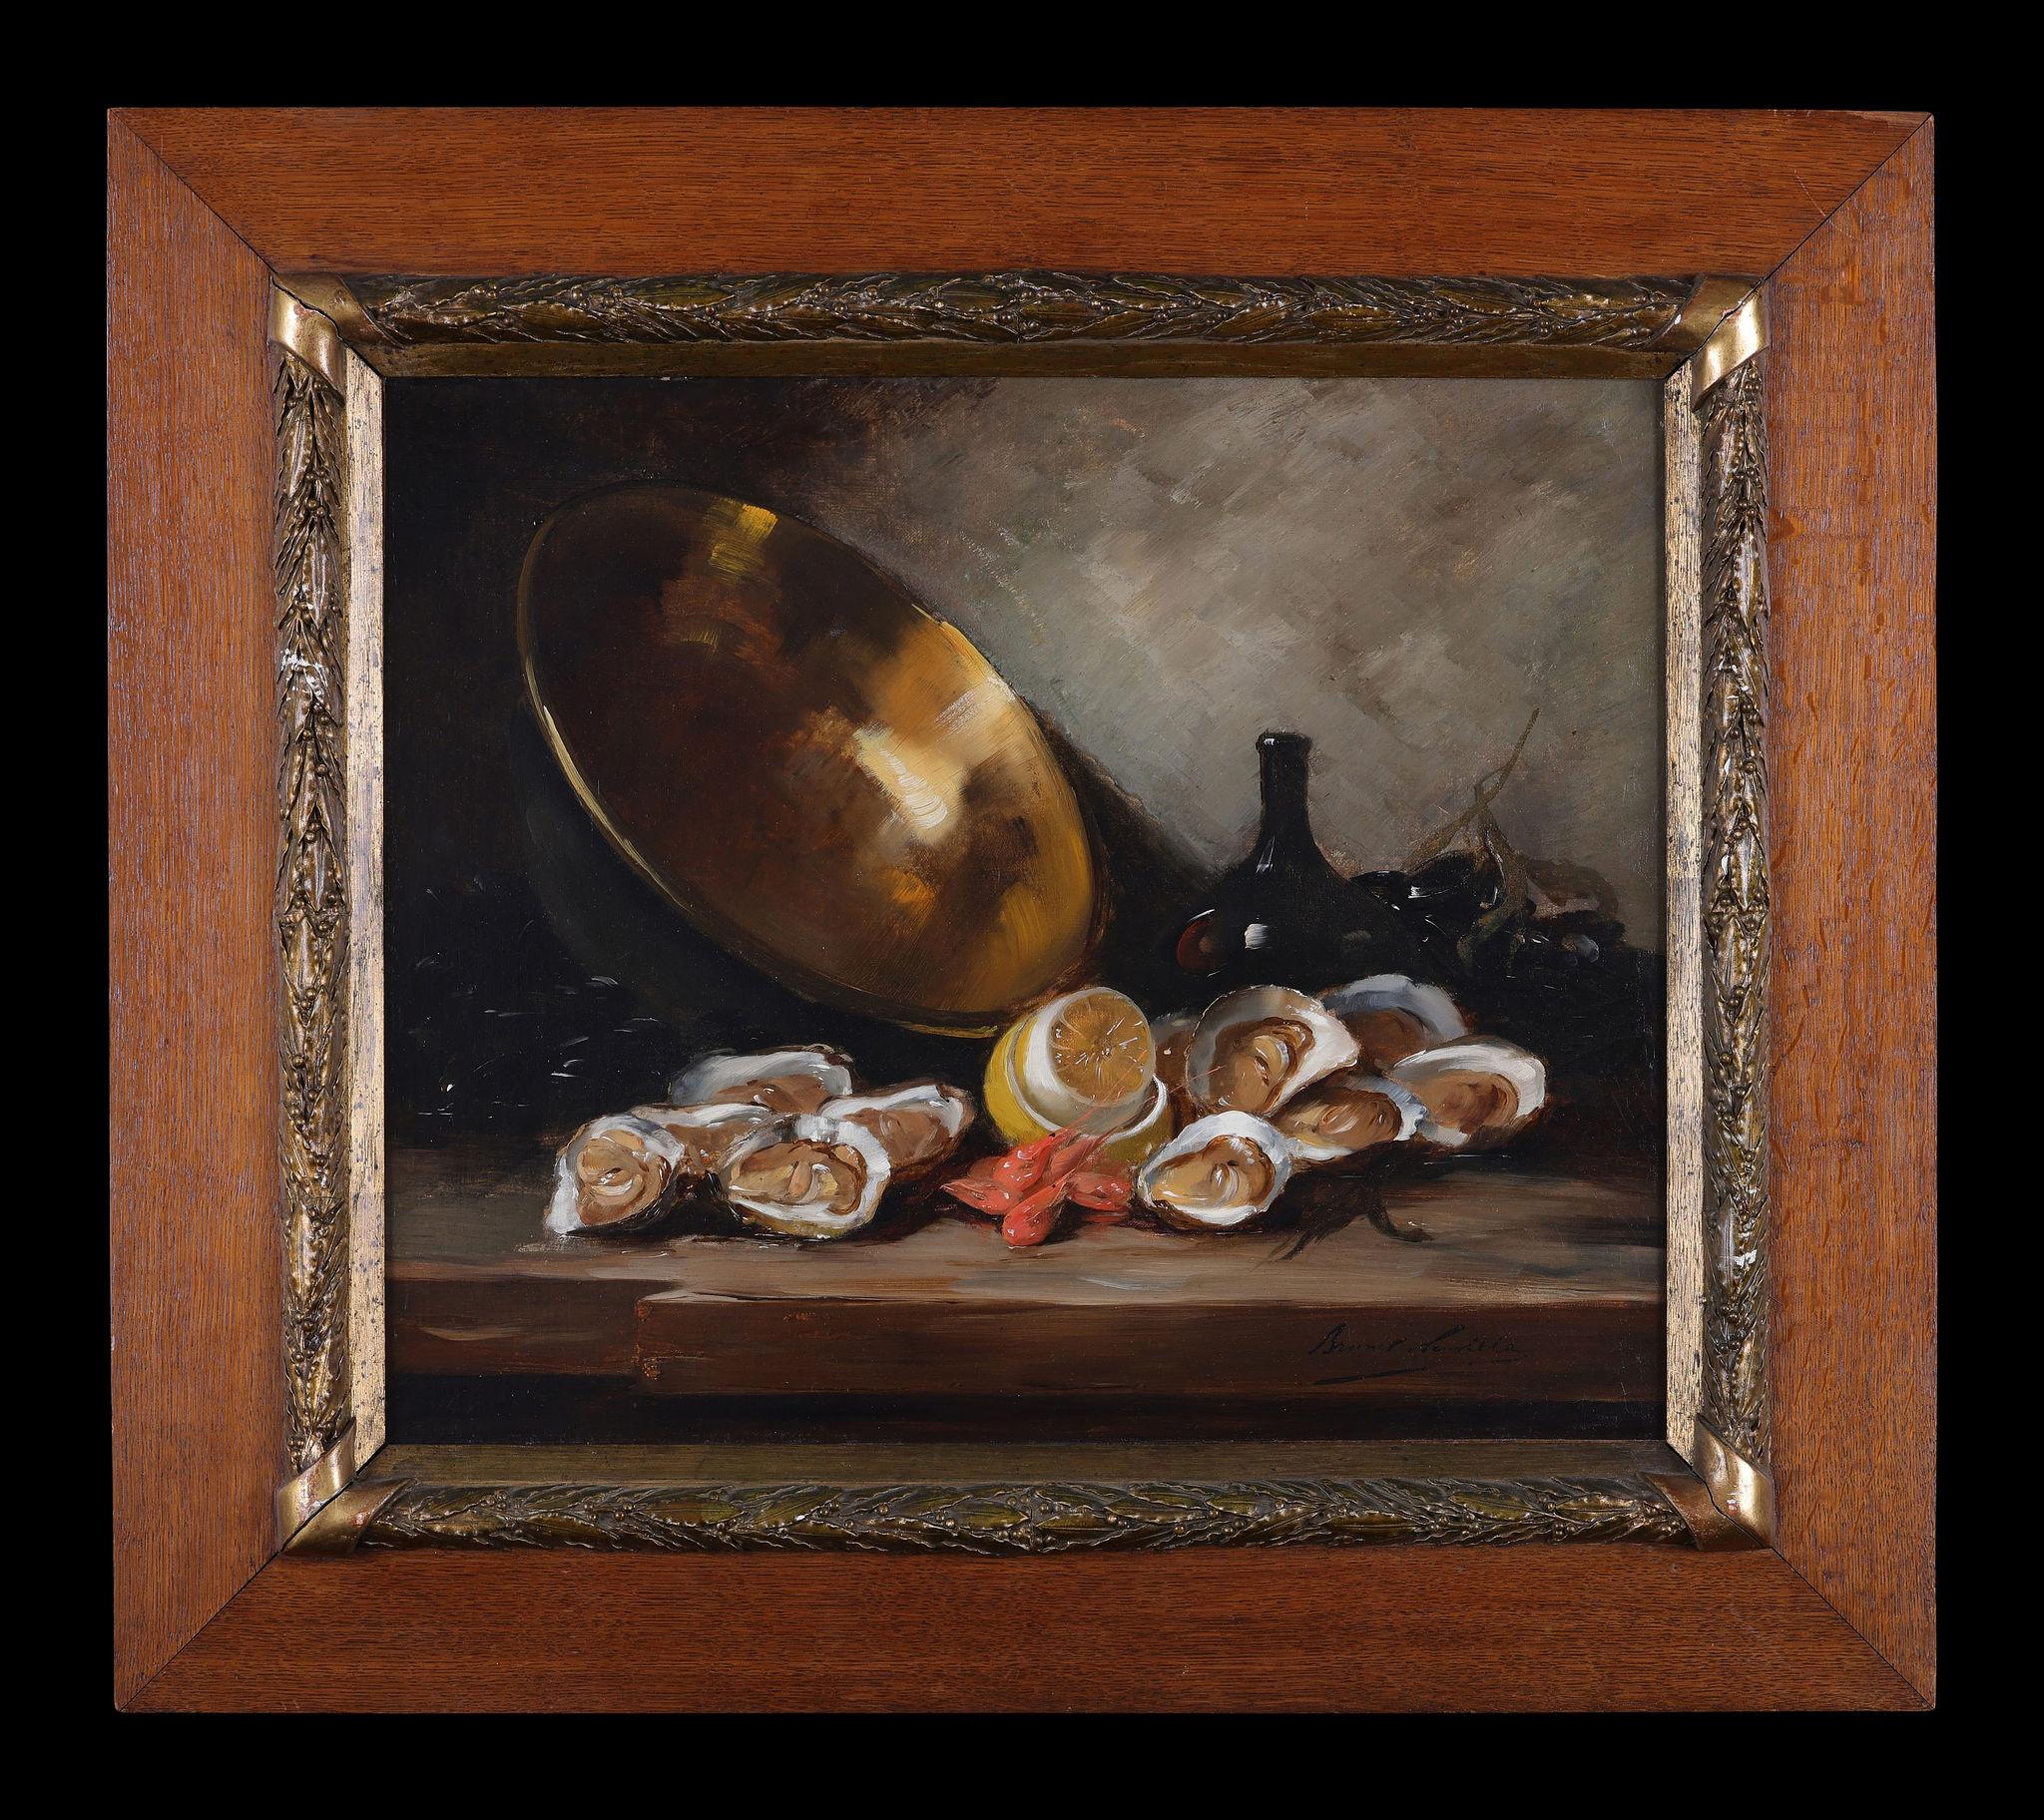 Austern und eine Kupferschale mit anderen Crustaceans – Painting von Alfred Arthur Brunel De Neuville